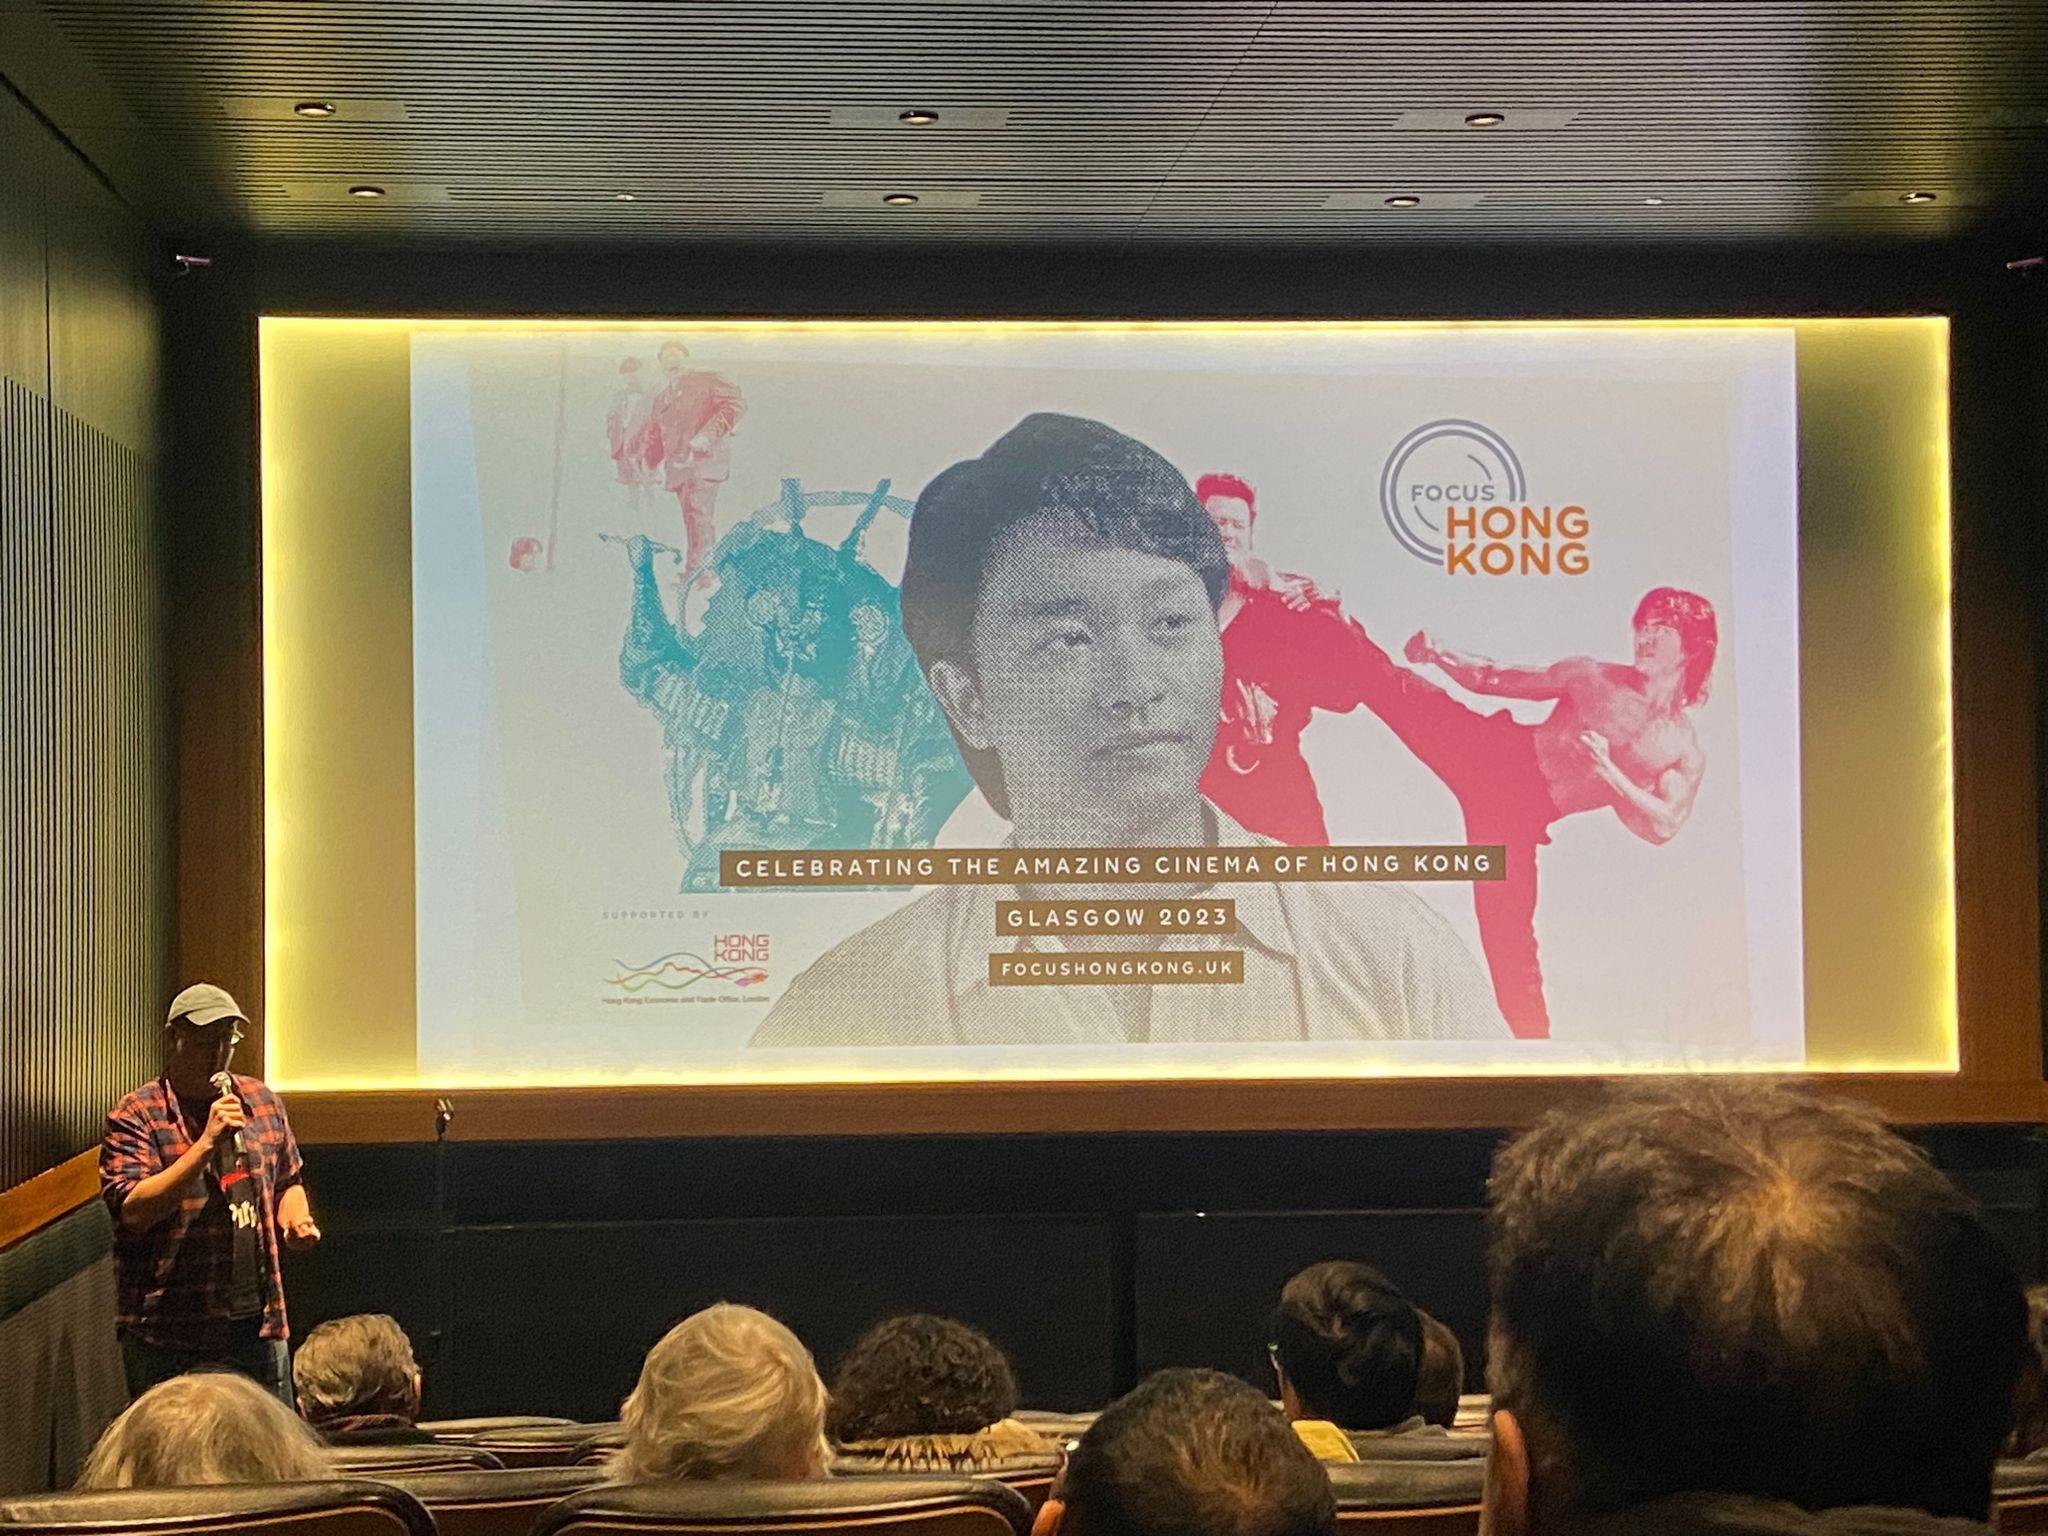 香港驻伦敦经济贸易办事处与《香港专辑》合作，于十二月二日至四日（伦敦时间）在英国苏格兰格拉斯哥电影院放映精选香港电影。图示《香港专辑》协办人James Mudge 向观众介绍电影《冬未来》。